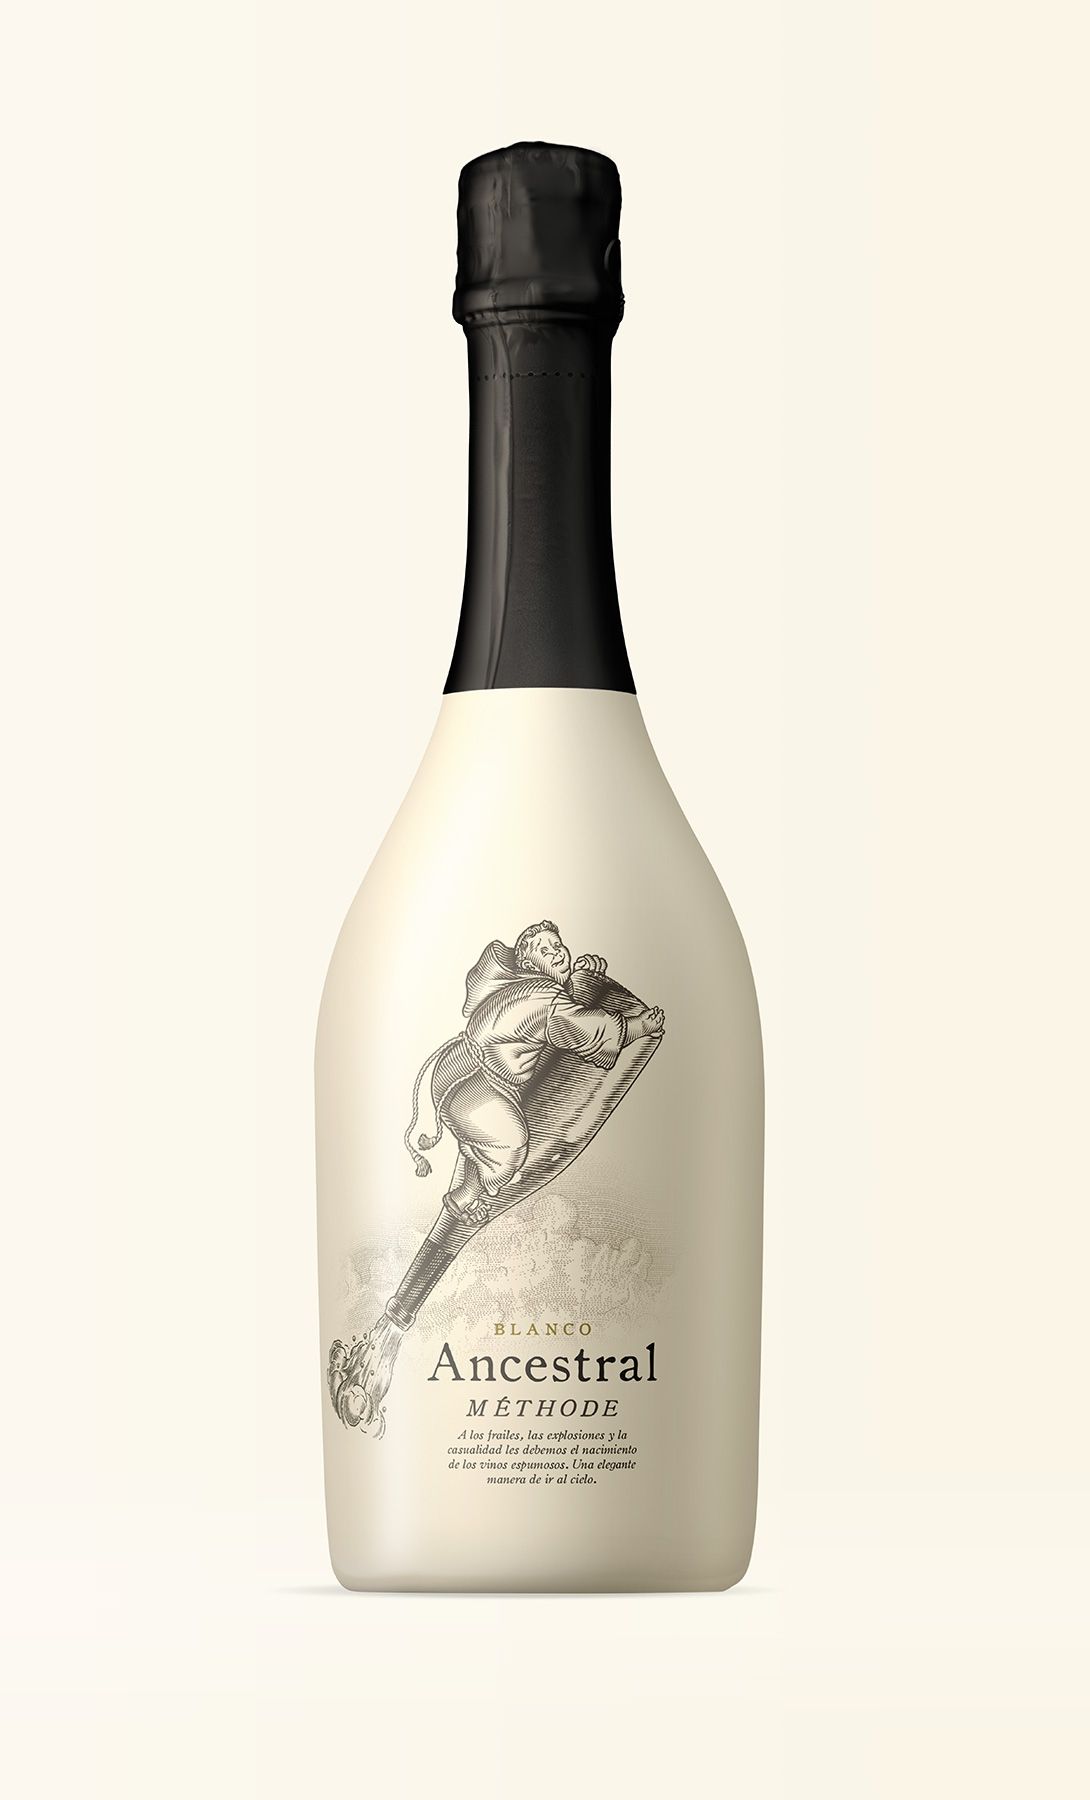 简约风格葡萄酒酒标设计 飞特网 酒包装设计作品欣赏